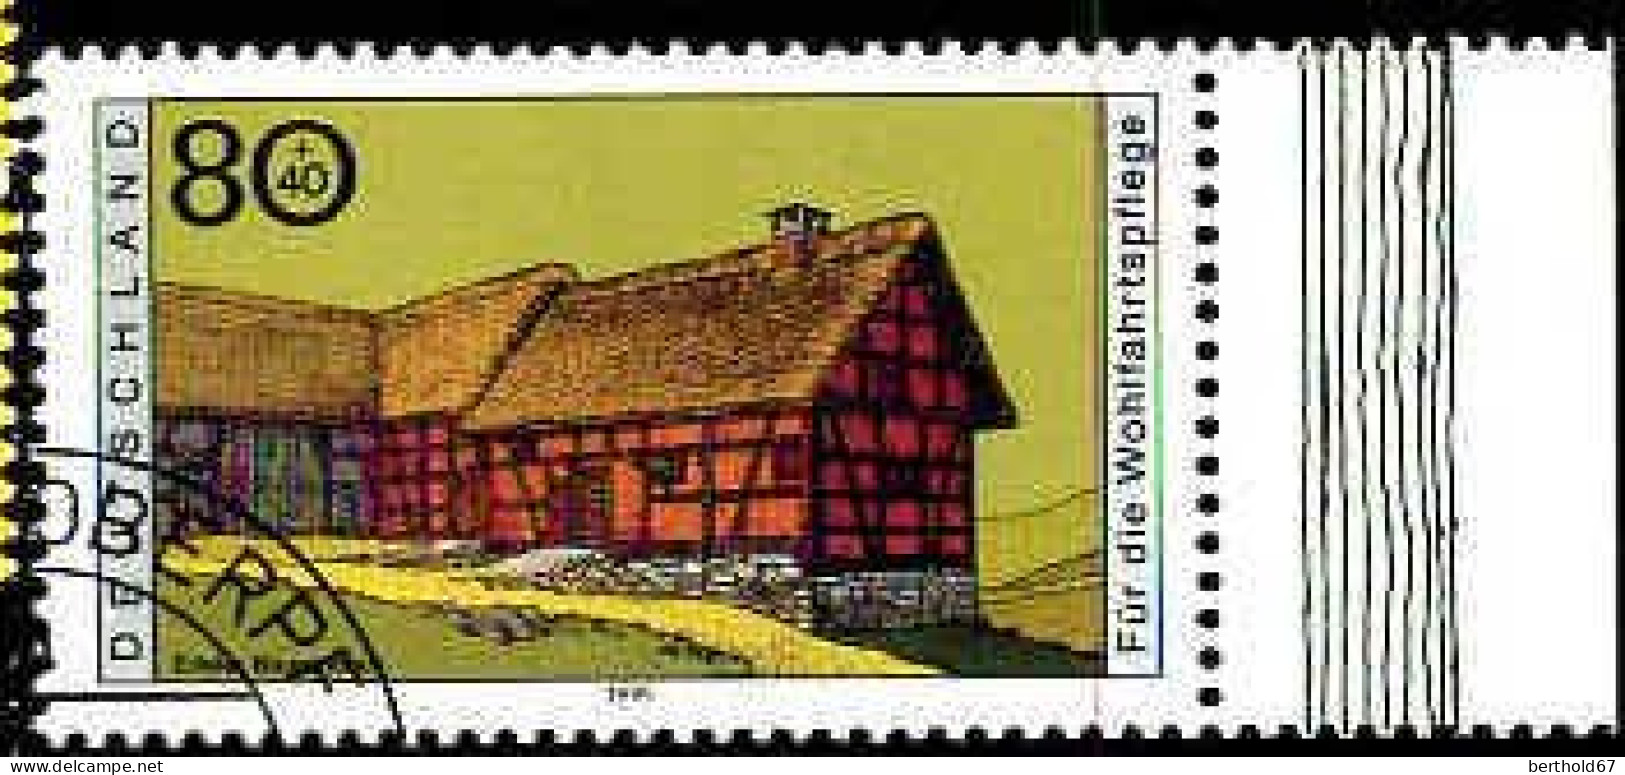 RFA Poste Obl Yv:1651 Mi:1819 Eifeler Bauernhaus Bord De Feuille (Beau Cachet Rond) - Gebruikt